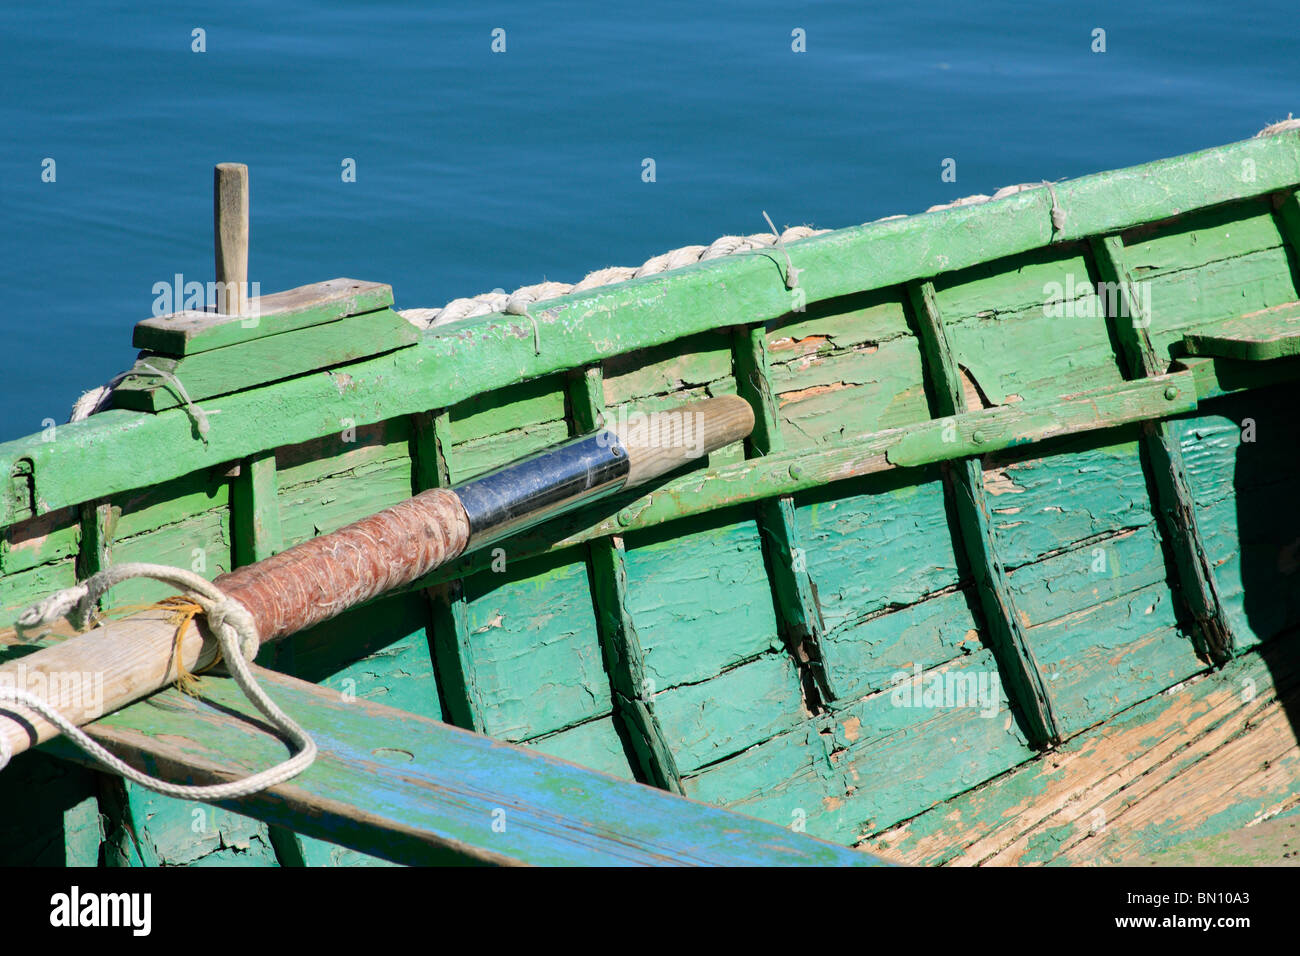 Un bateau à rames en bois vert dans le port de Marsaxlokk, Malte Banque D'Images